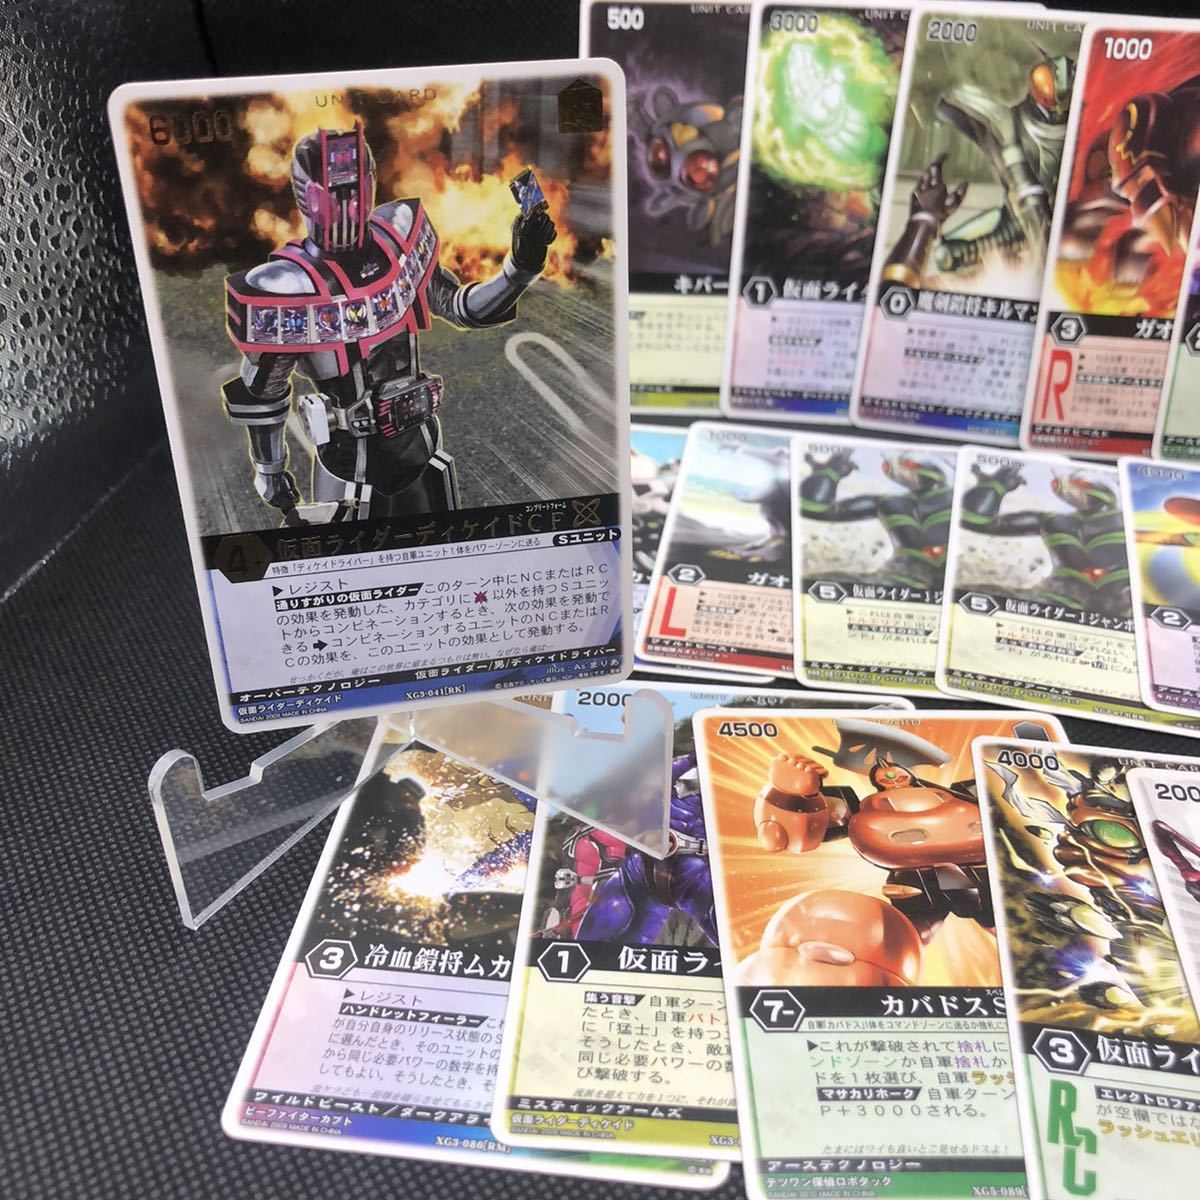  Ranger Strike коллекционная карточка продажа комплектом ti Kei do знак редкость есть 